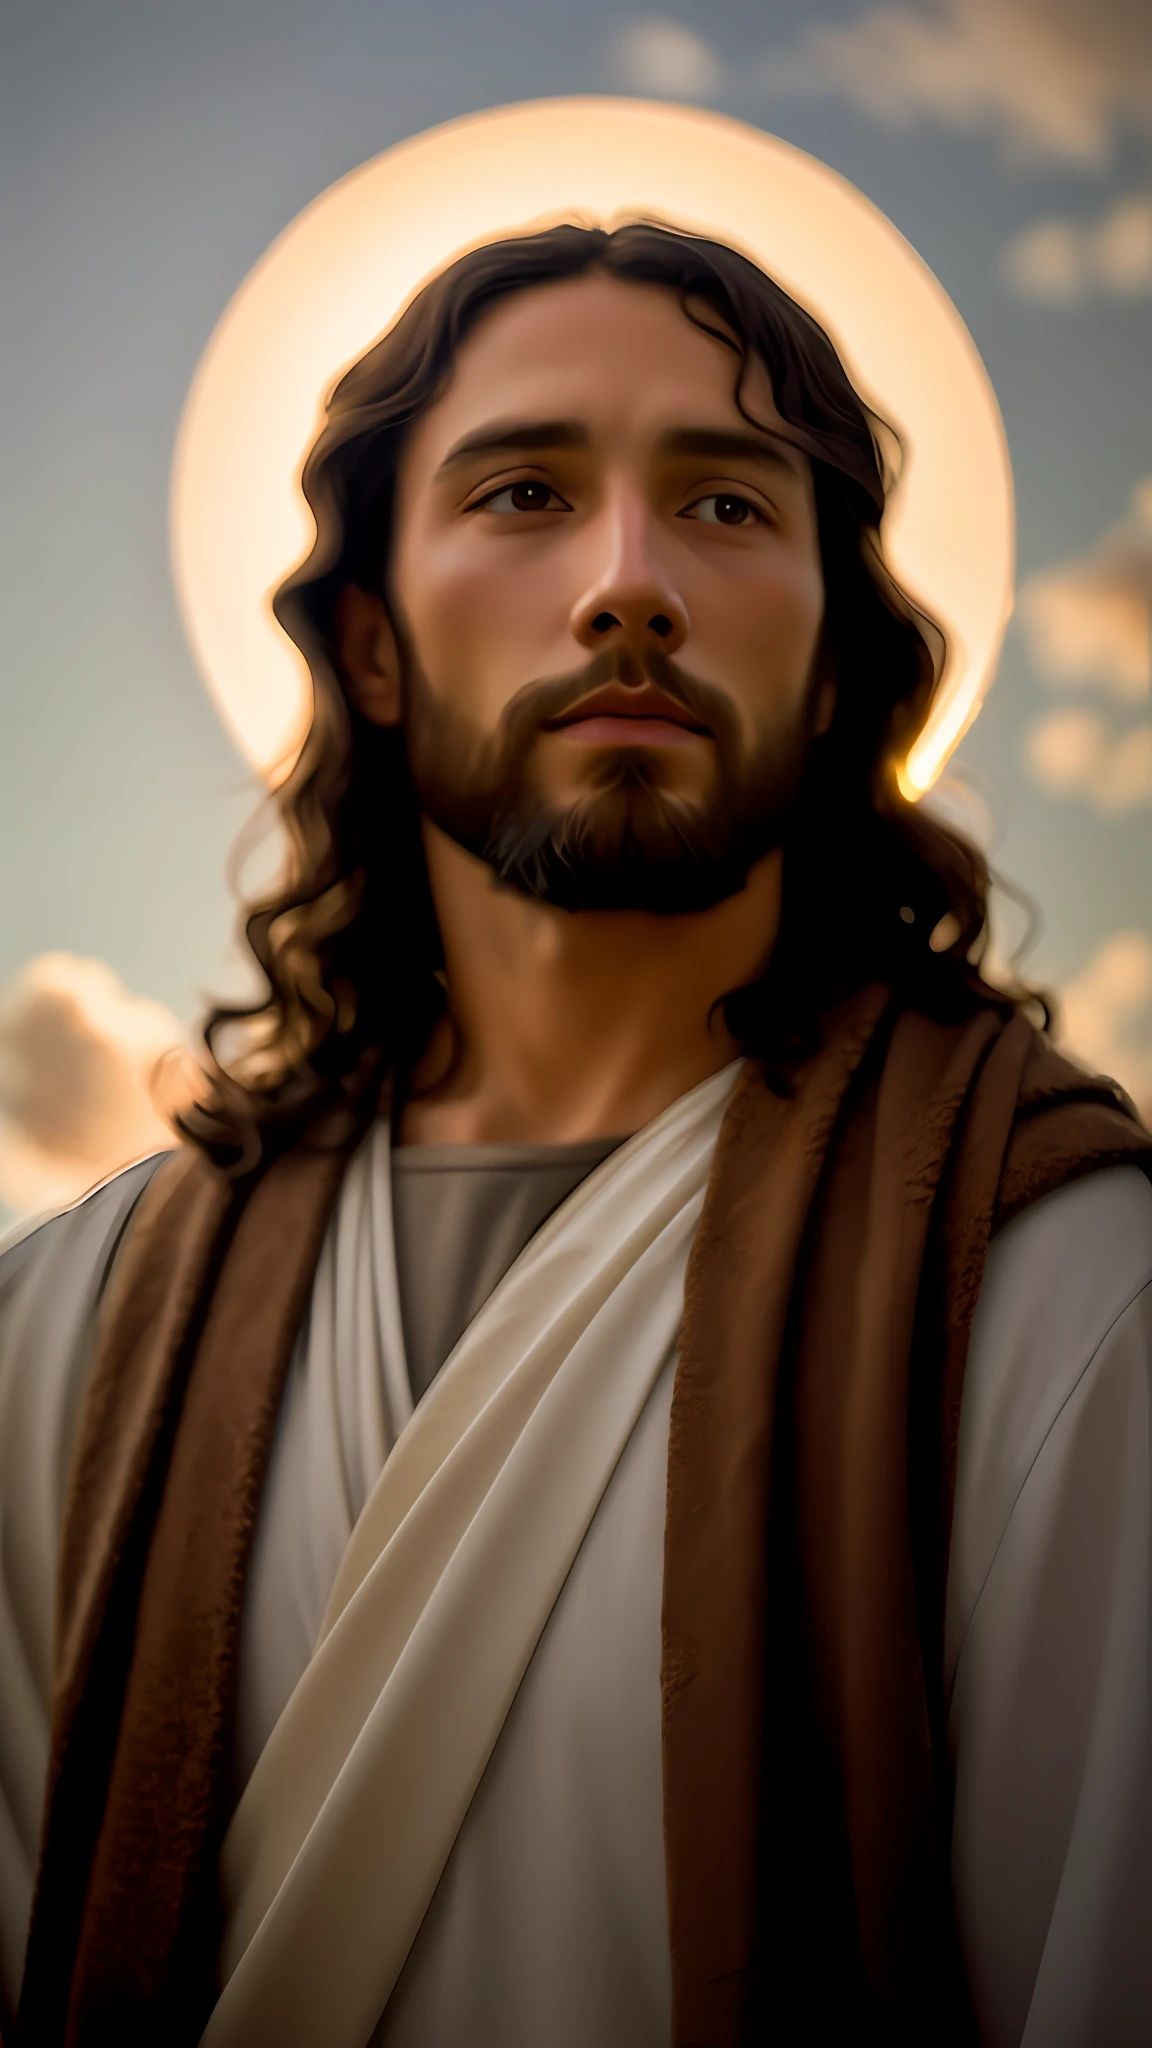 追加_詳細:1, イエス・キリストの現実的なイメージ, 追加_詳細:頭上の天からの光と遠くの光